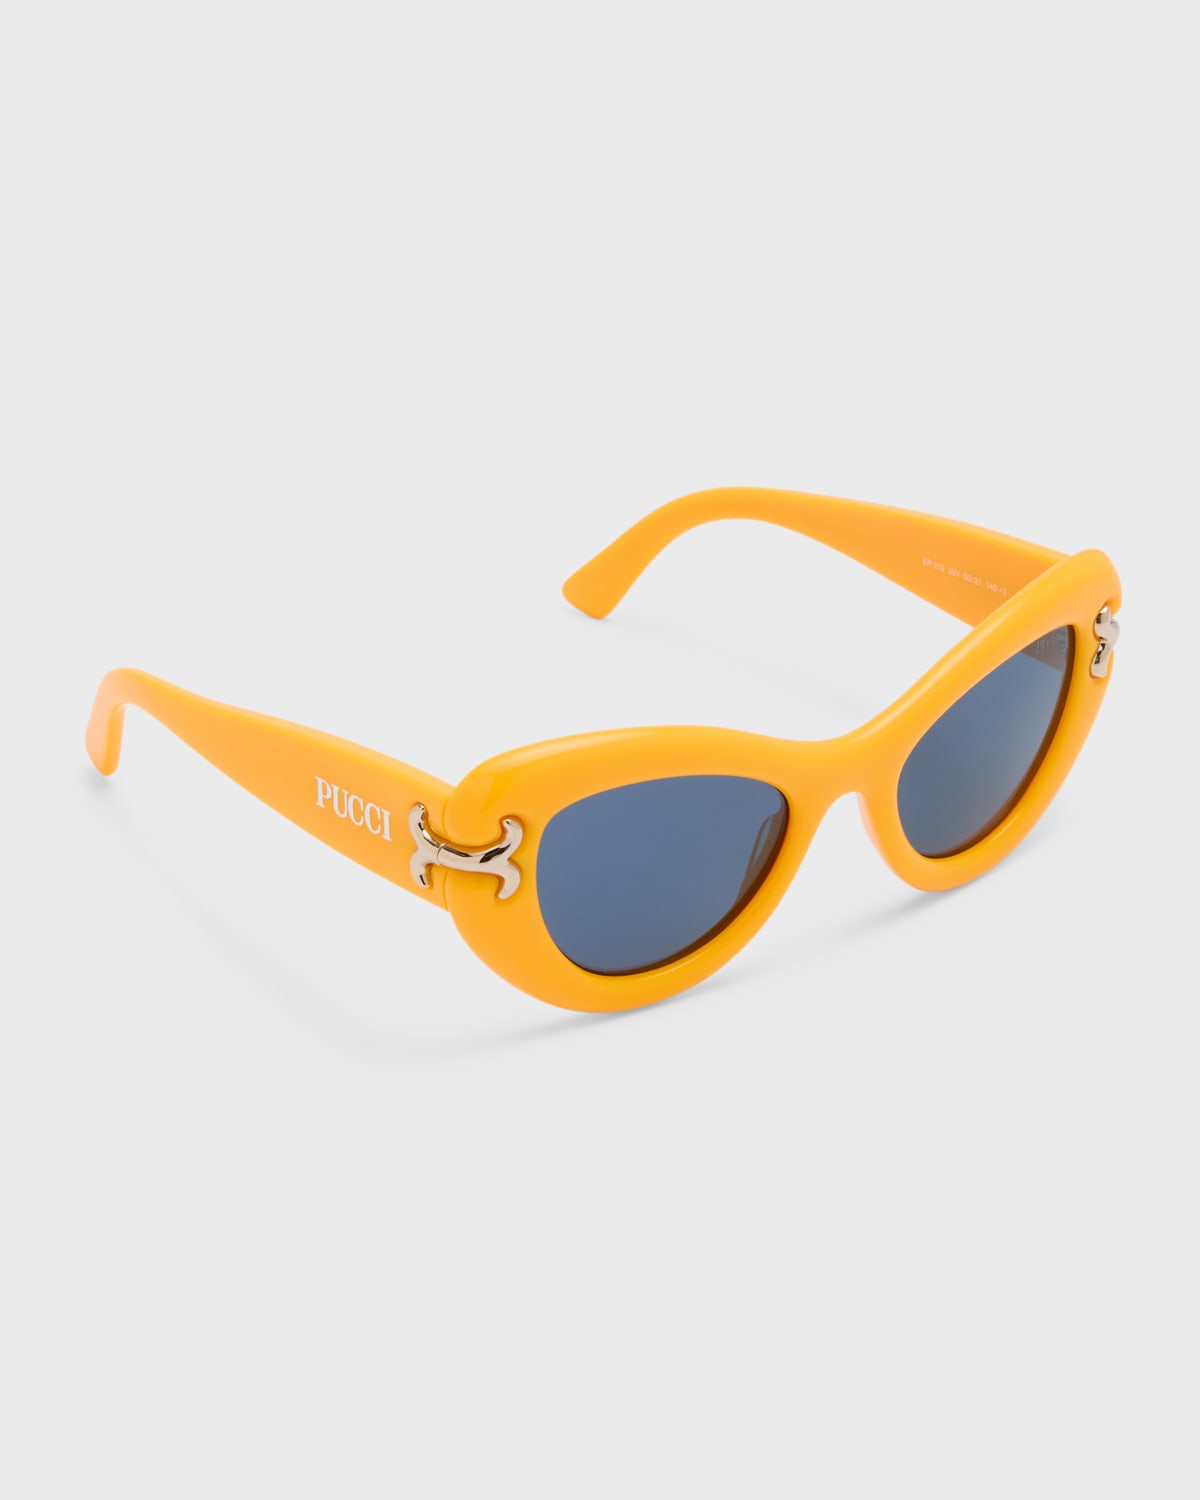 Emilio Pucci 51mm Geometric Square Sunglasses in Blue